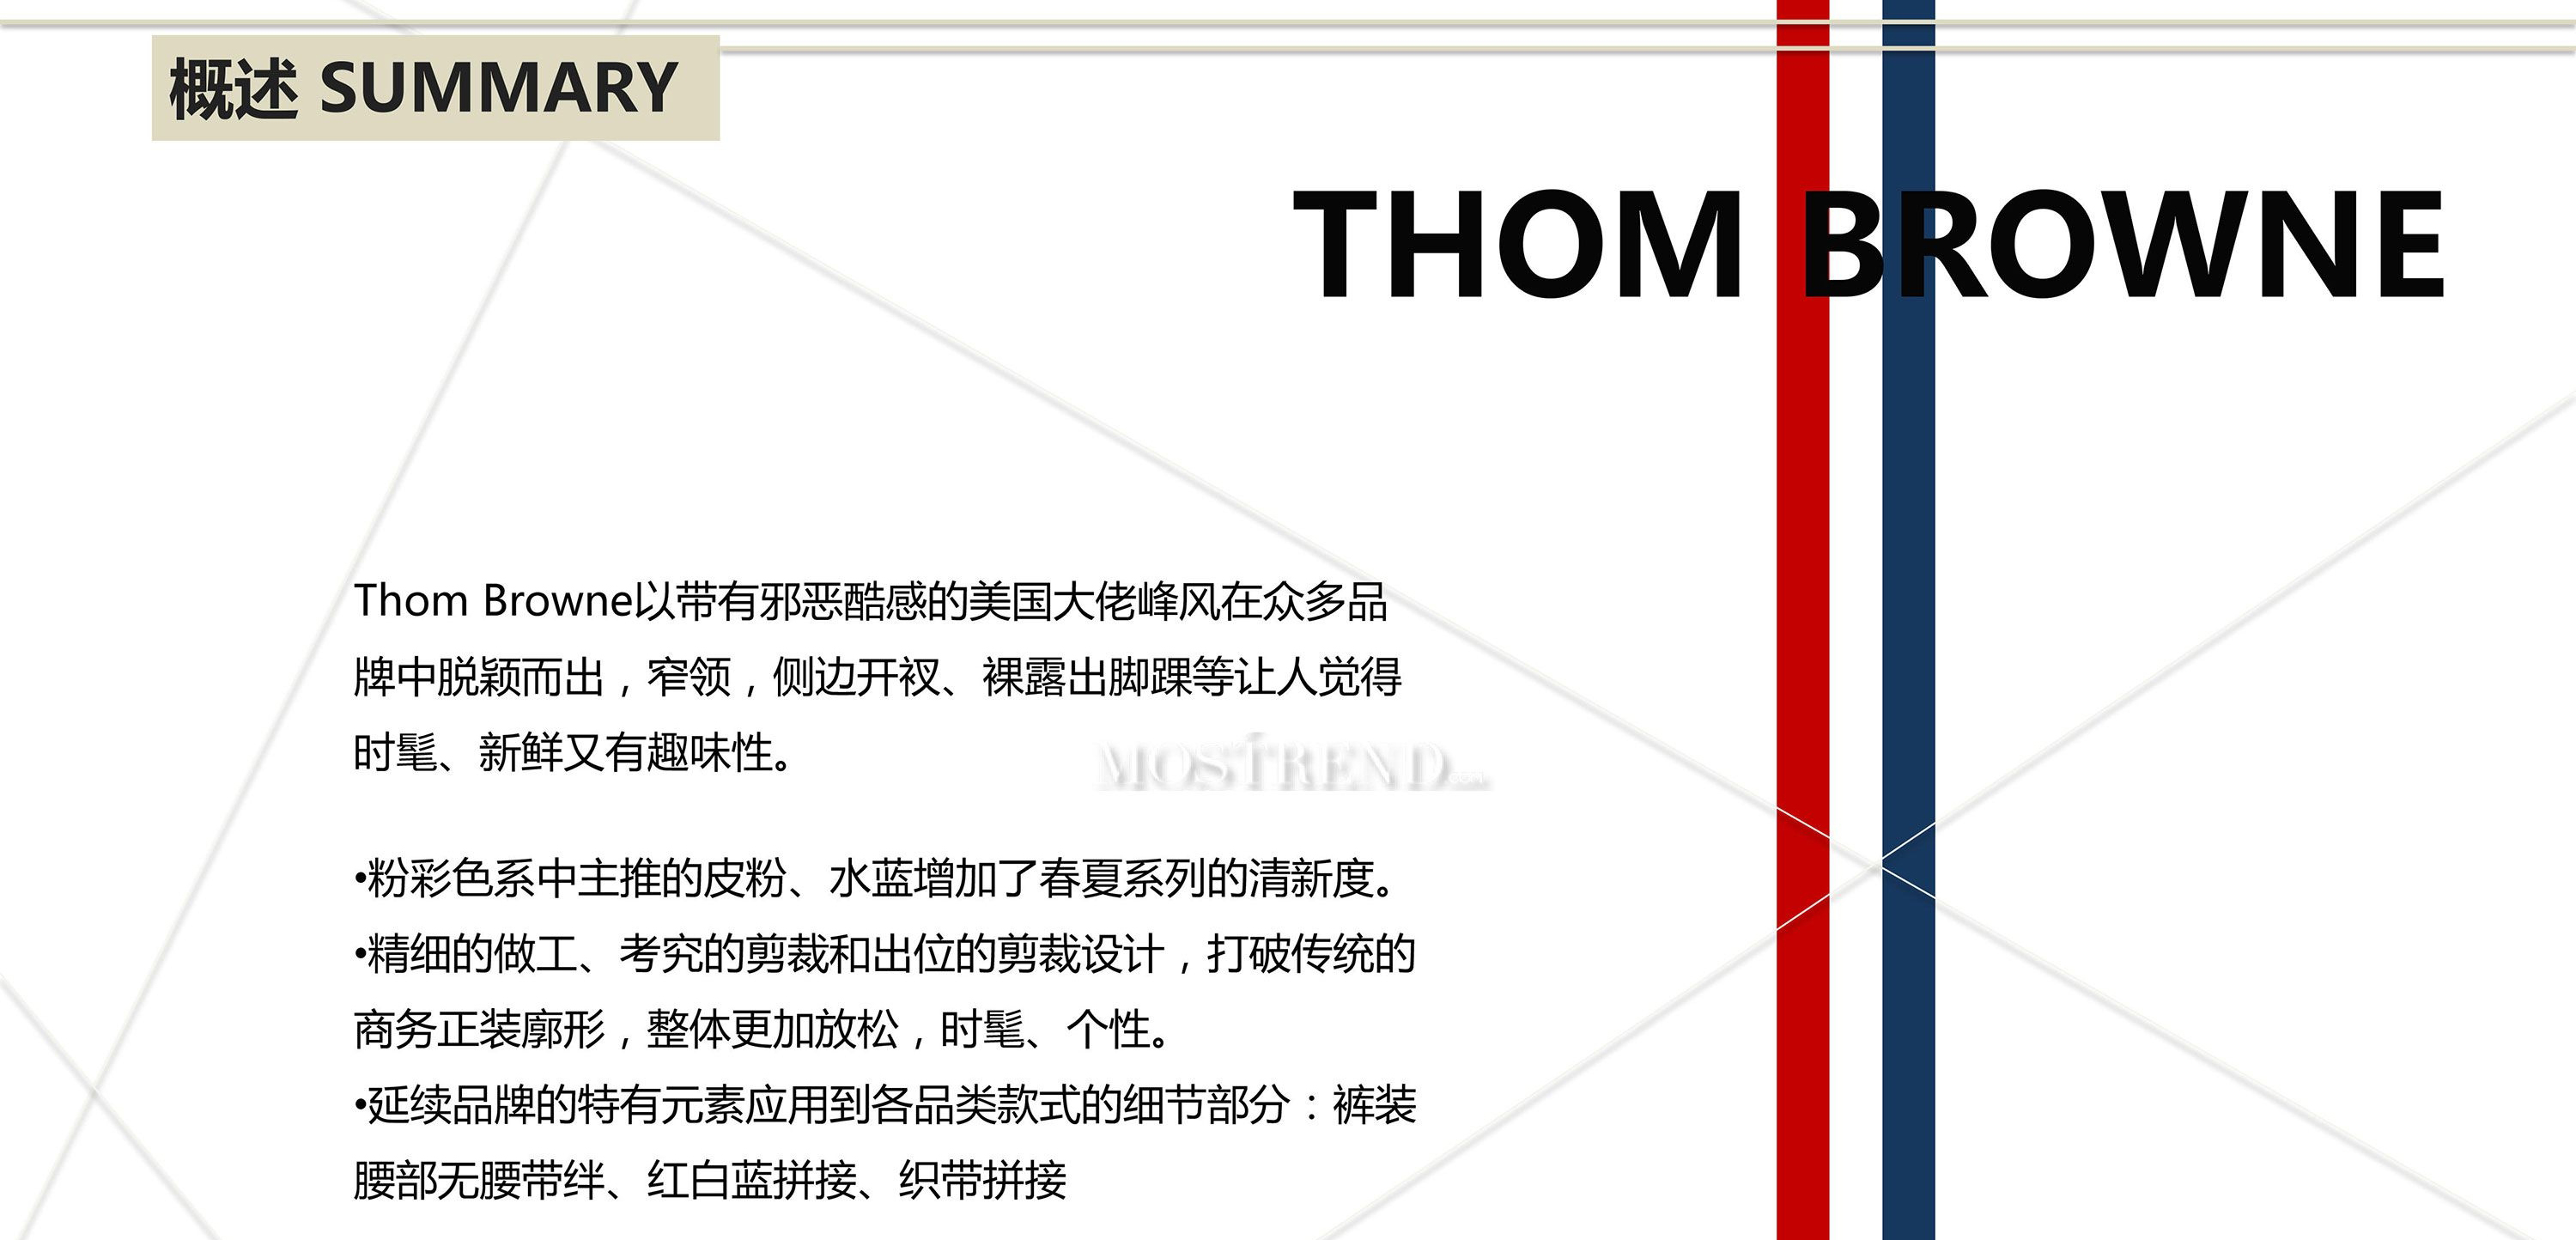 Thom Browne 复刻汤姆布朗皮带_汤姆布朗腰带_原版汤姆布朗皮带品牌专区